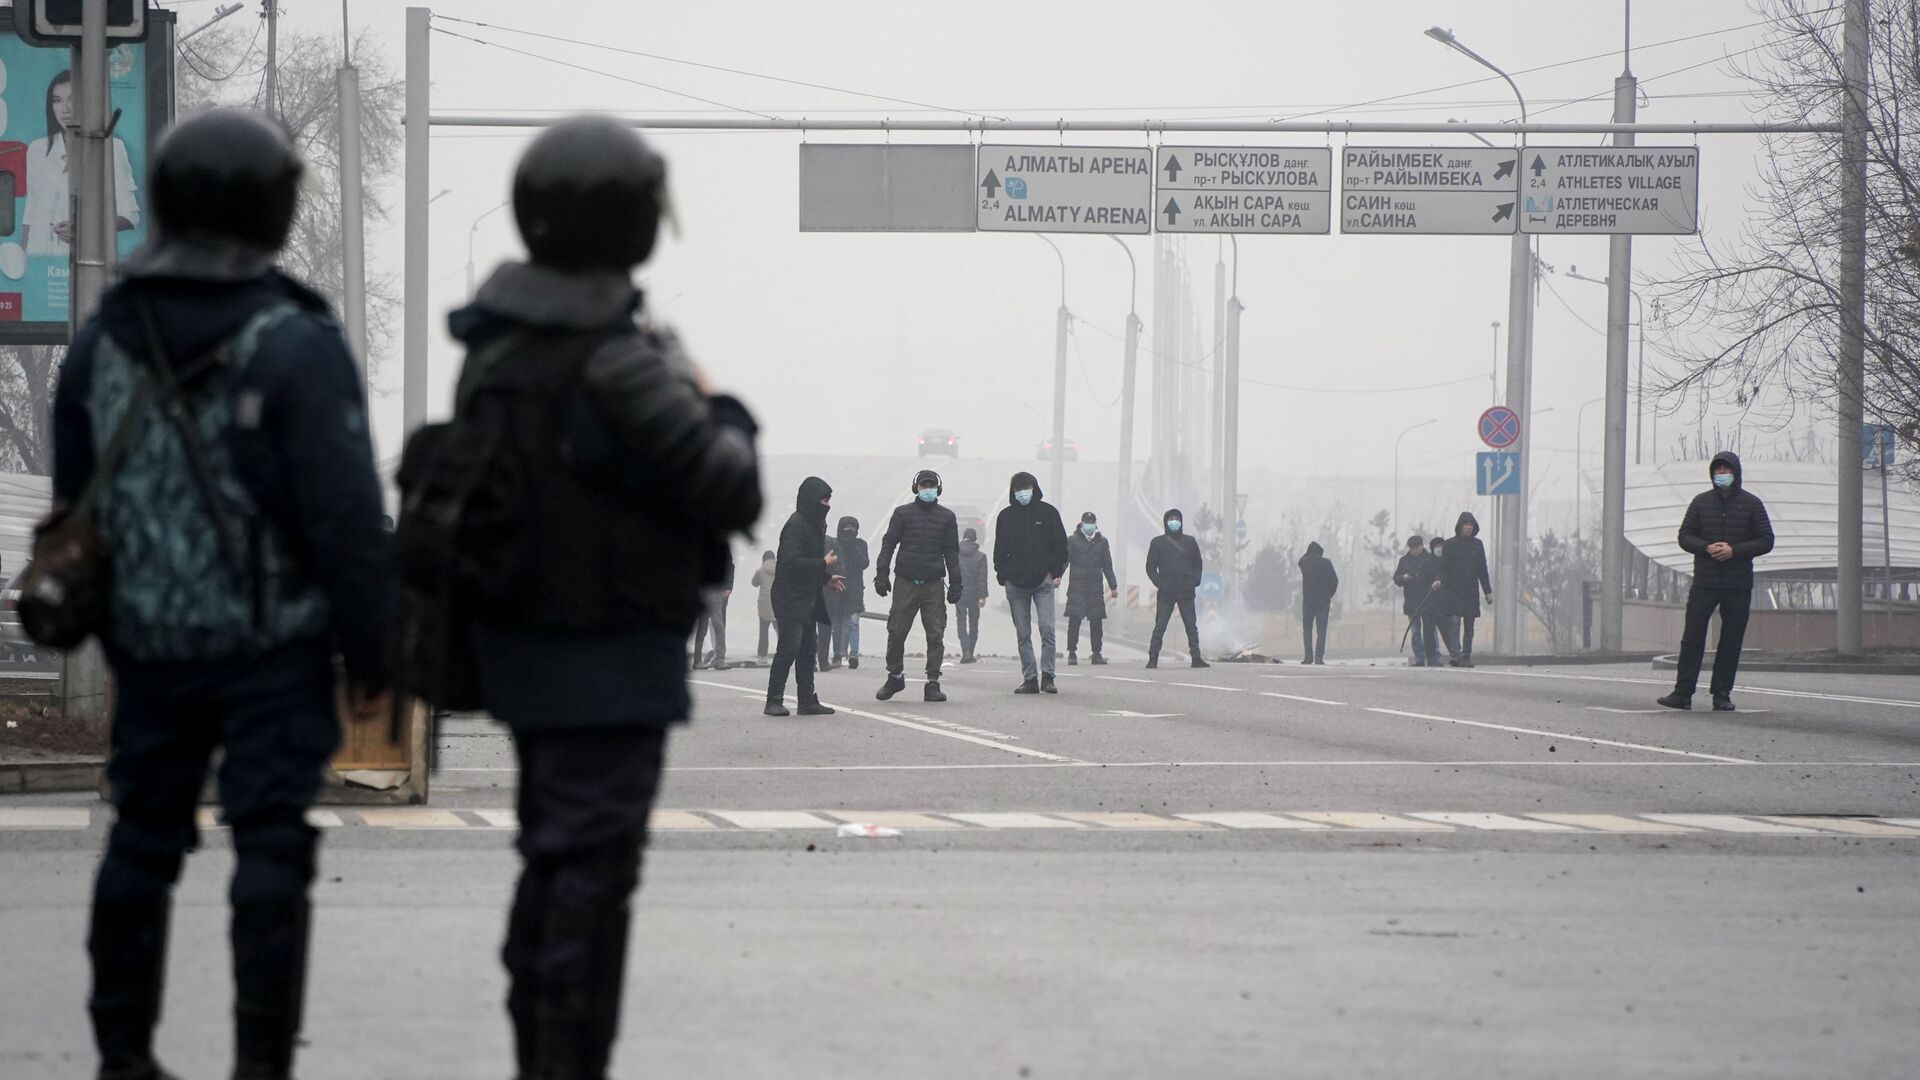 Демонстранты собираются перед полицией во время акции протеста в Алматы, Казахстан, в среду, 5 января 2022 г. - Sputnik Казахстан, 1920, 15.05.2023